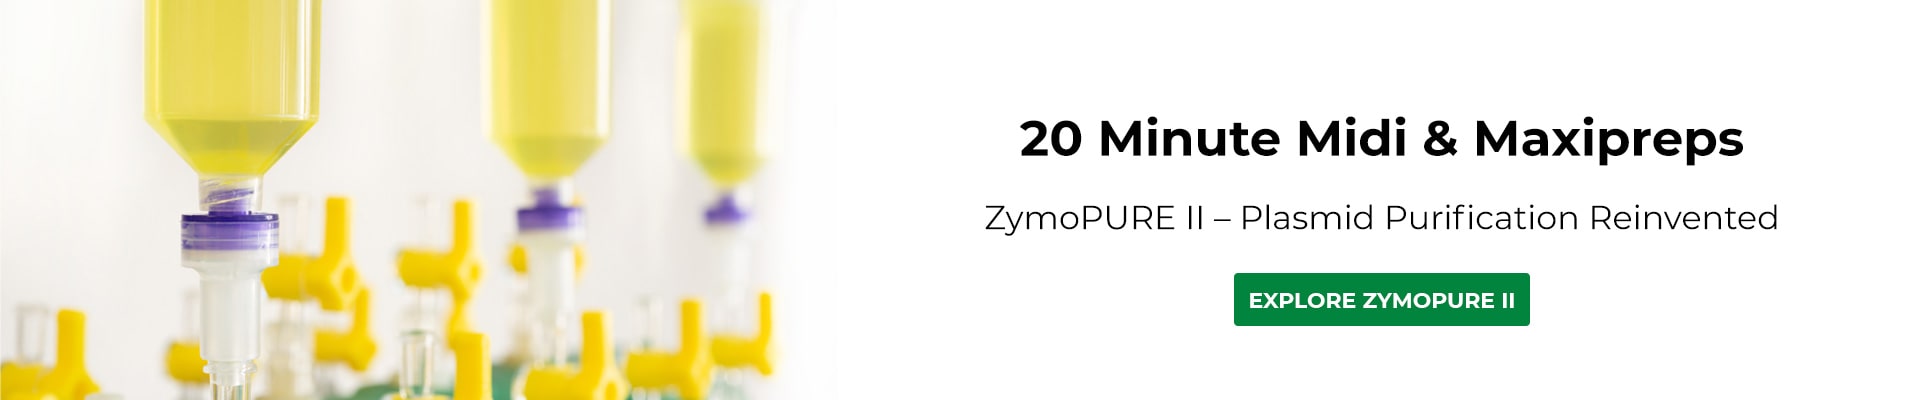 Banner for ZymoPure II